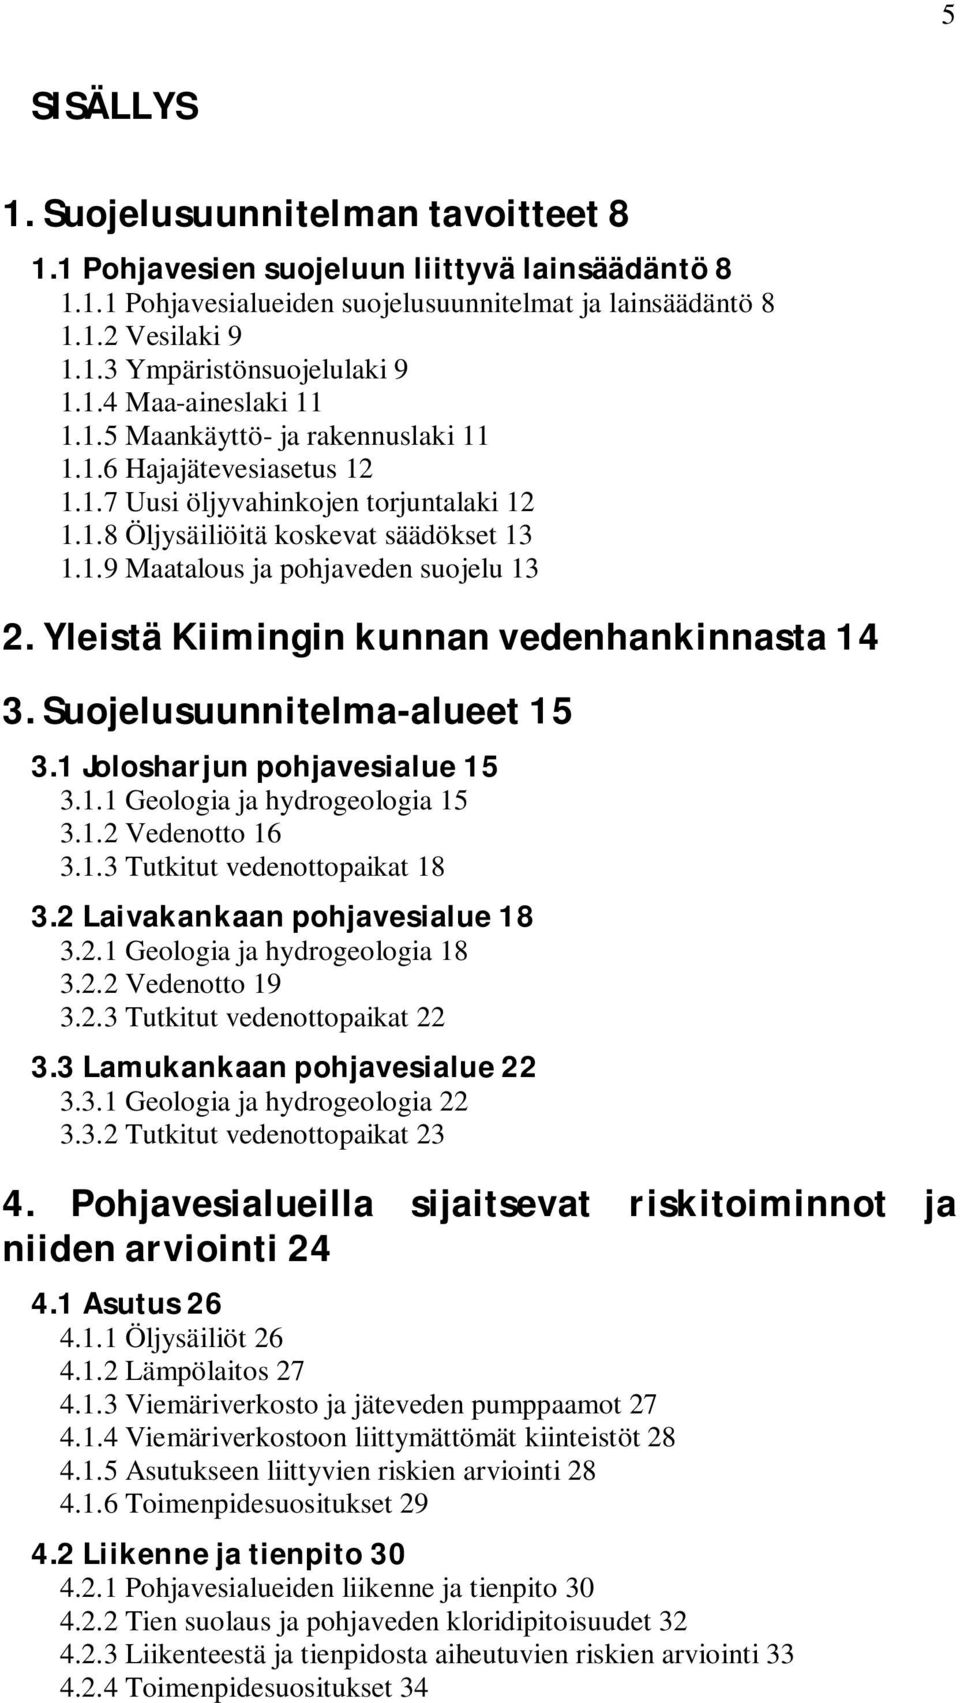 Yleistä Kiimingin kunnan vedenhankinnasta 14 3. Suojelusuunnitelma-alueet 15 3.1 Jolosharjun pohjavesialue 15 3.1.1 Geologia ja hydrogeologia 15 3.1.2 Vedenotto 16 3.1.3 Tutkitut vedenottopaikat 18 3.